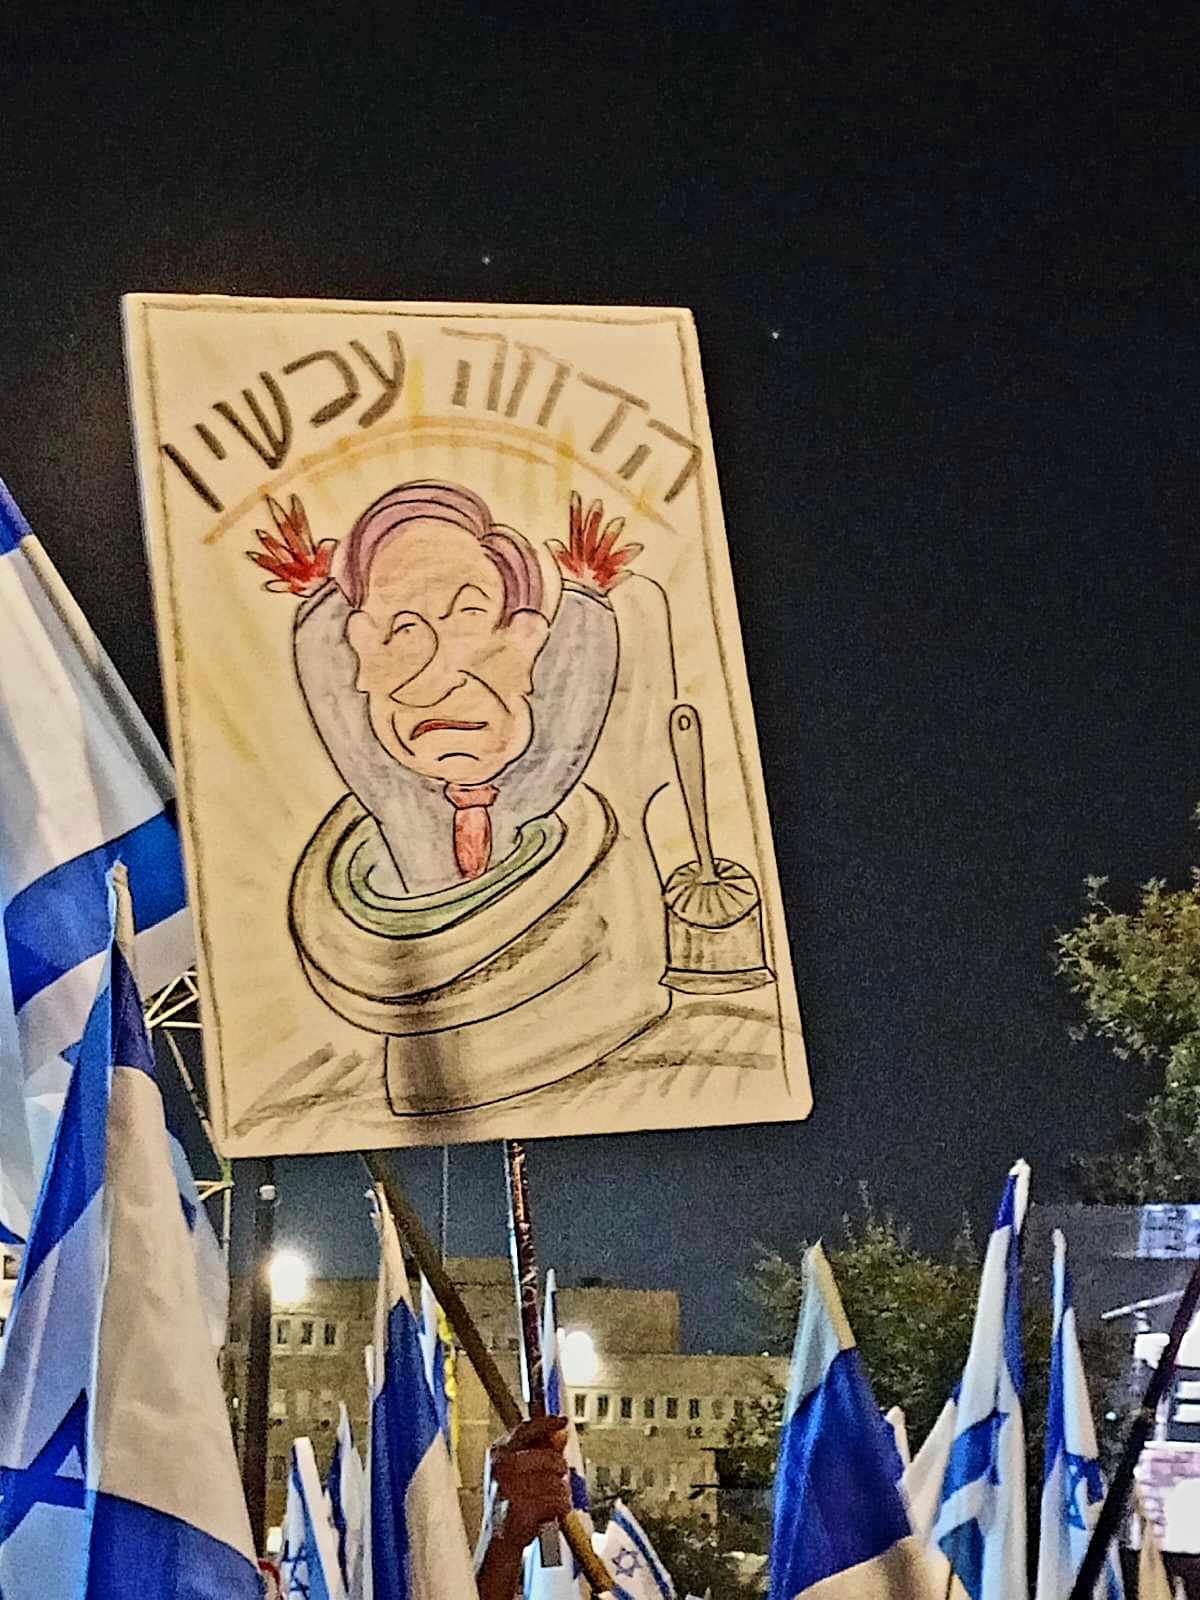 Az előre hozott választásért tüntettek Izraelben